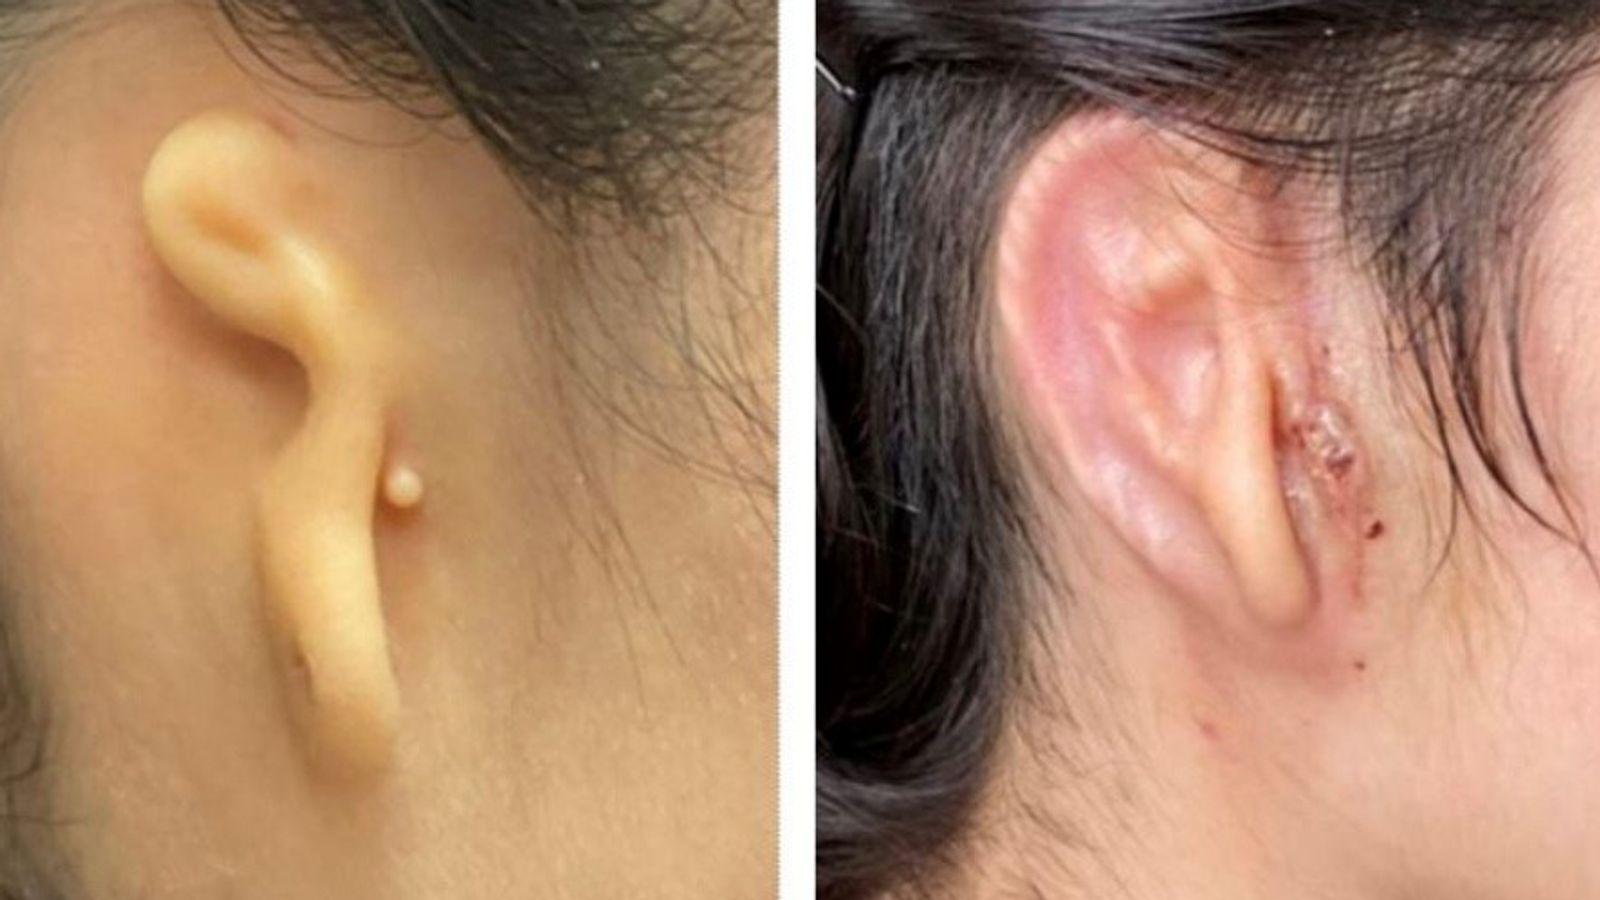 Una mujer obtiene su primera oreja nueva impresa en 3D a partir de sus propias células en un trasplante ‘revolucionario’ |  noticias de ciencia y tecnologia